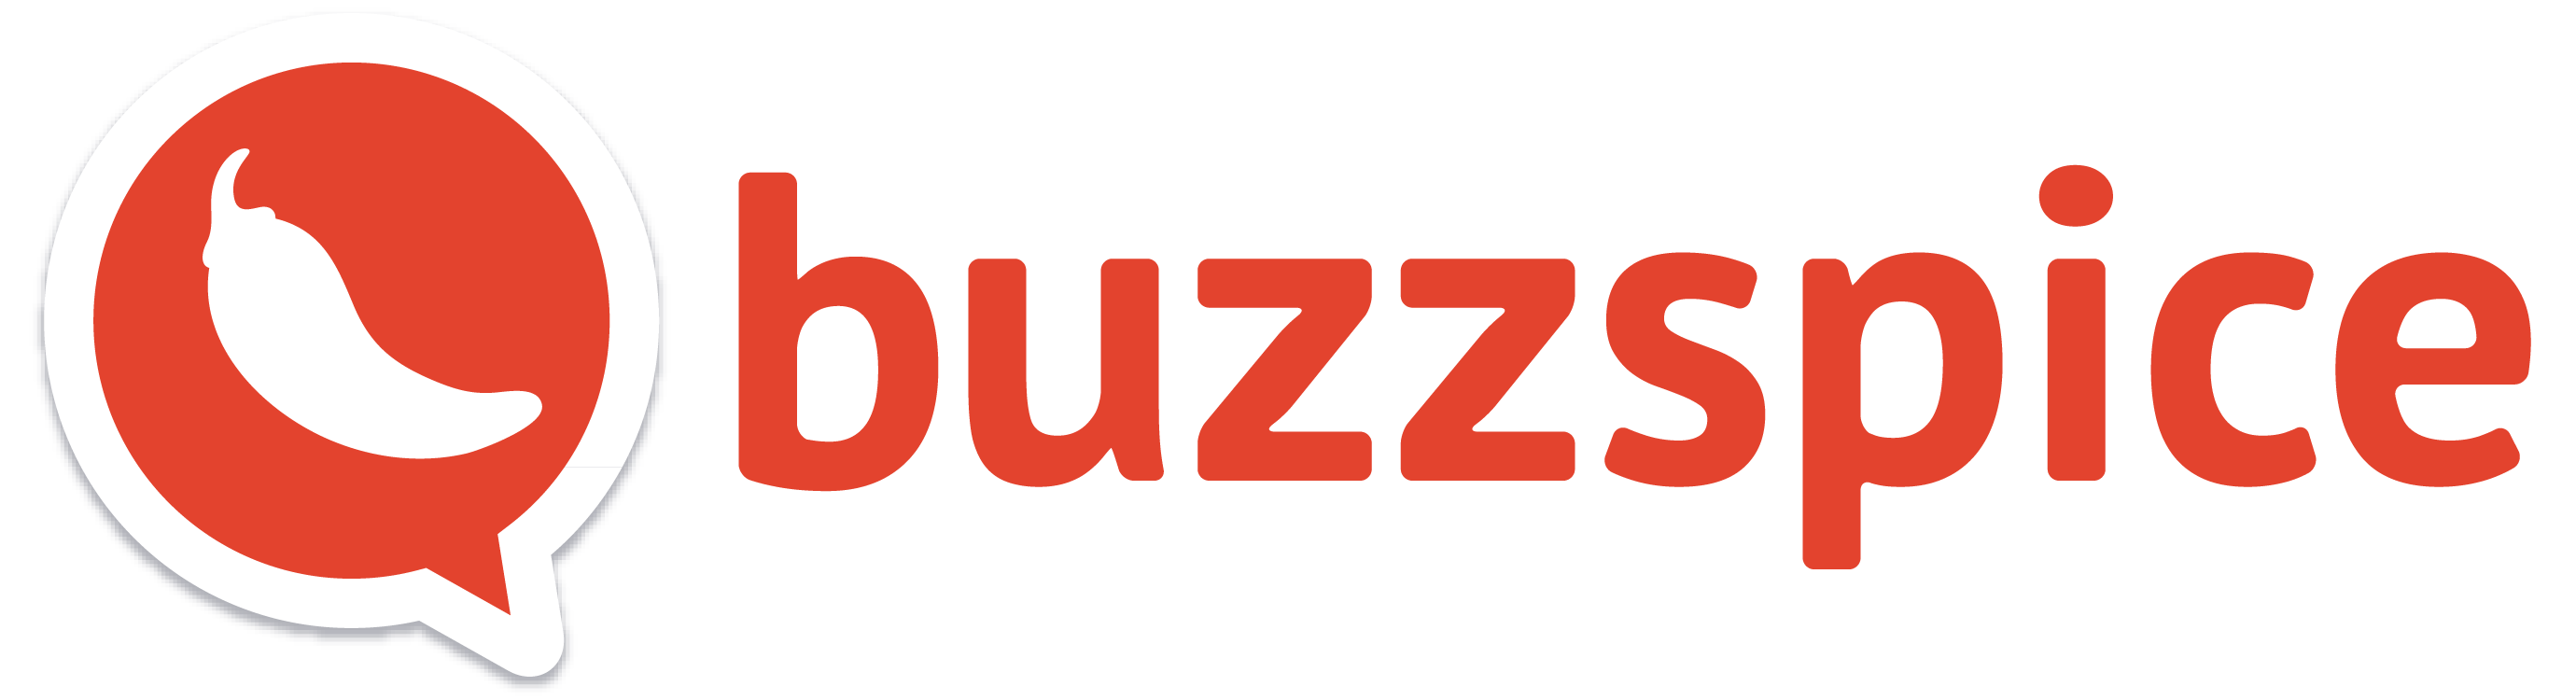 BuzzSpice logo